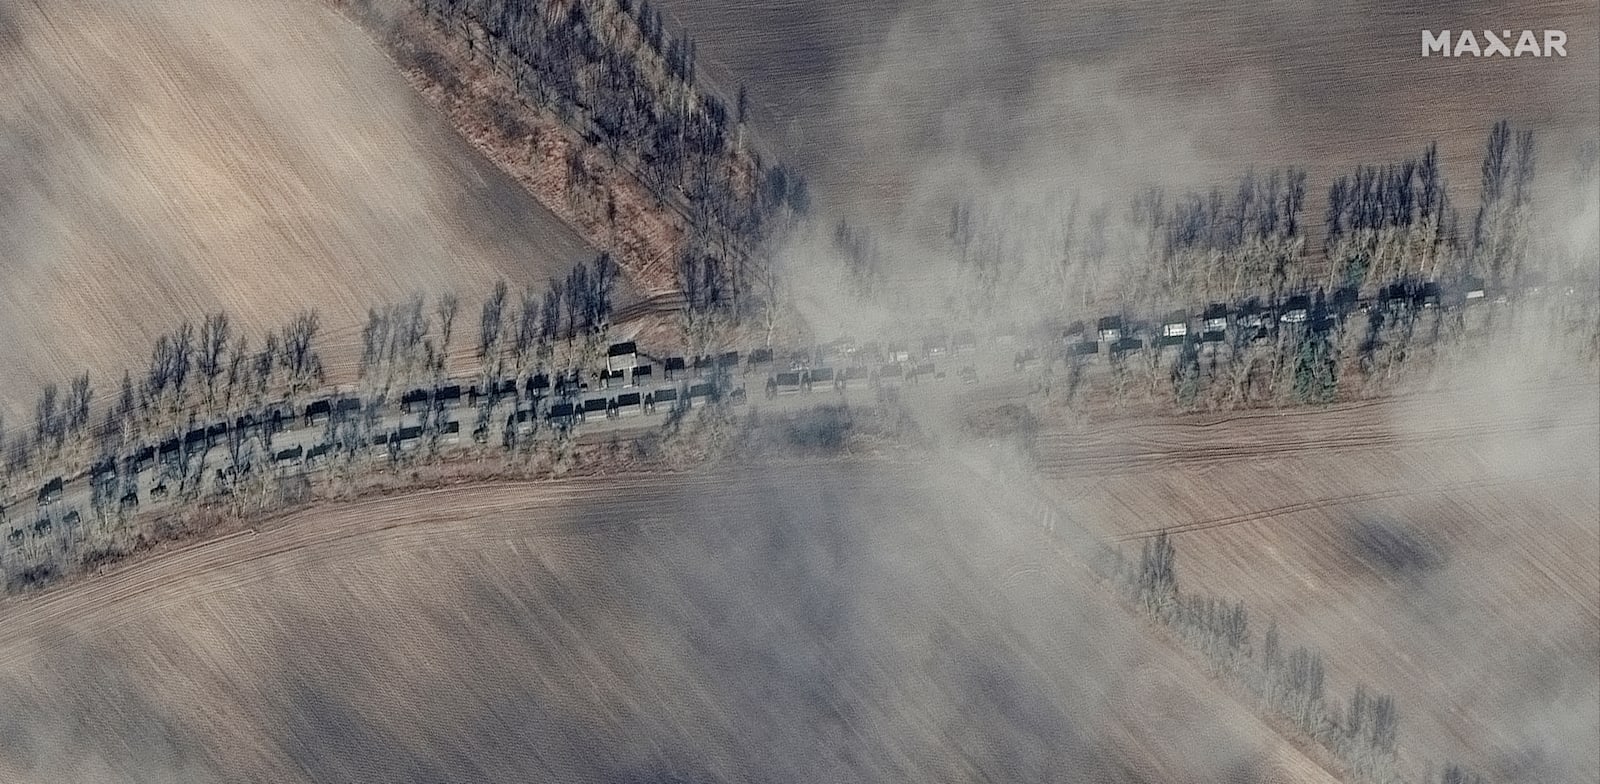 צילומי לווין שמראים את הכוחות הרוסיים מתקדמים לכיוון קייב, ב-27 בפברואר. מעשי התוקפנות של פוטין מאיימים לגרור את העולם 70 שנים אחורנית / צילום: Reuters, Maxar Technologies/Handout